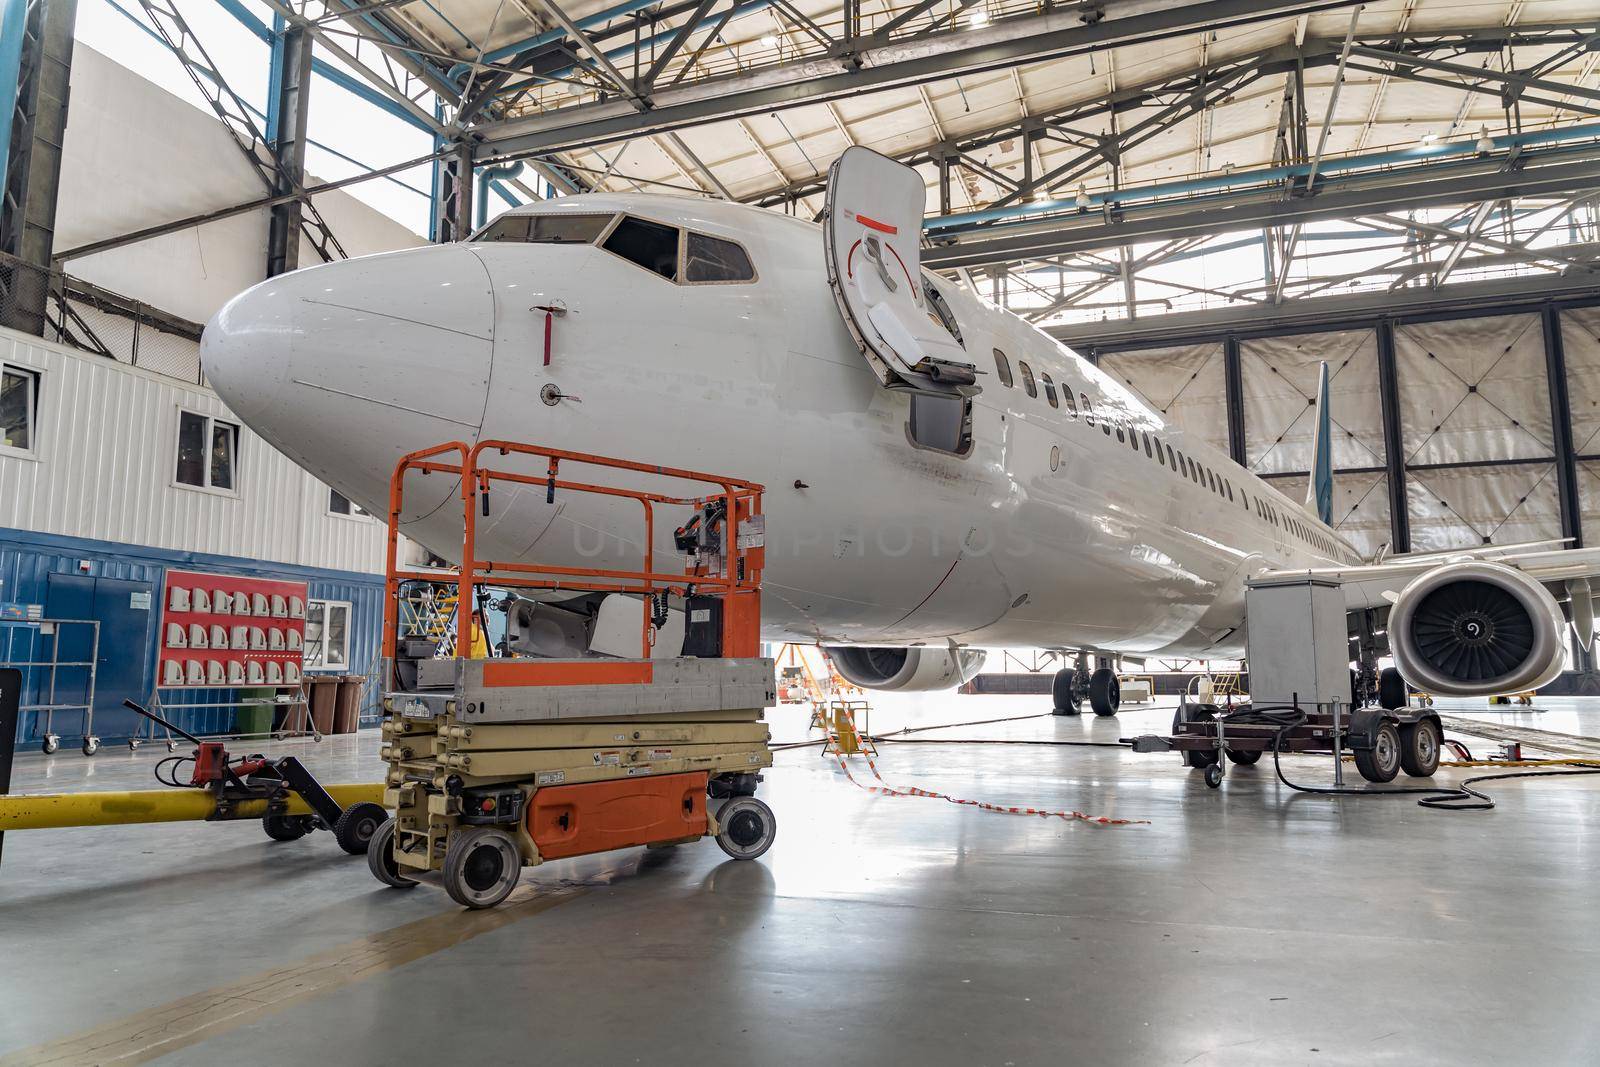 Passenger aircraft on maintenance of engine and fuselage repair in hangar by Yaroslav_astakhov